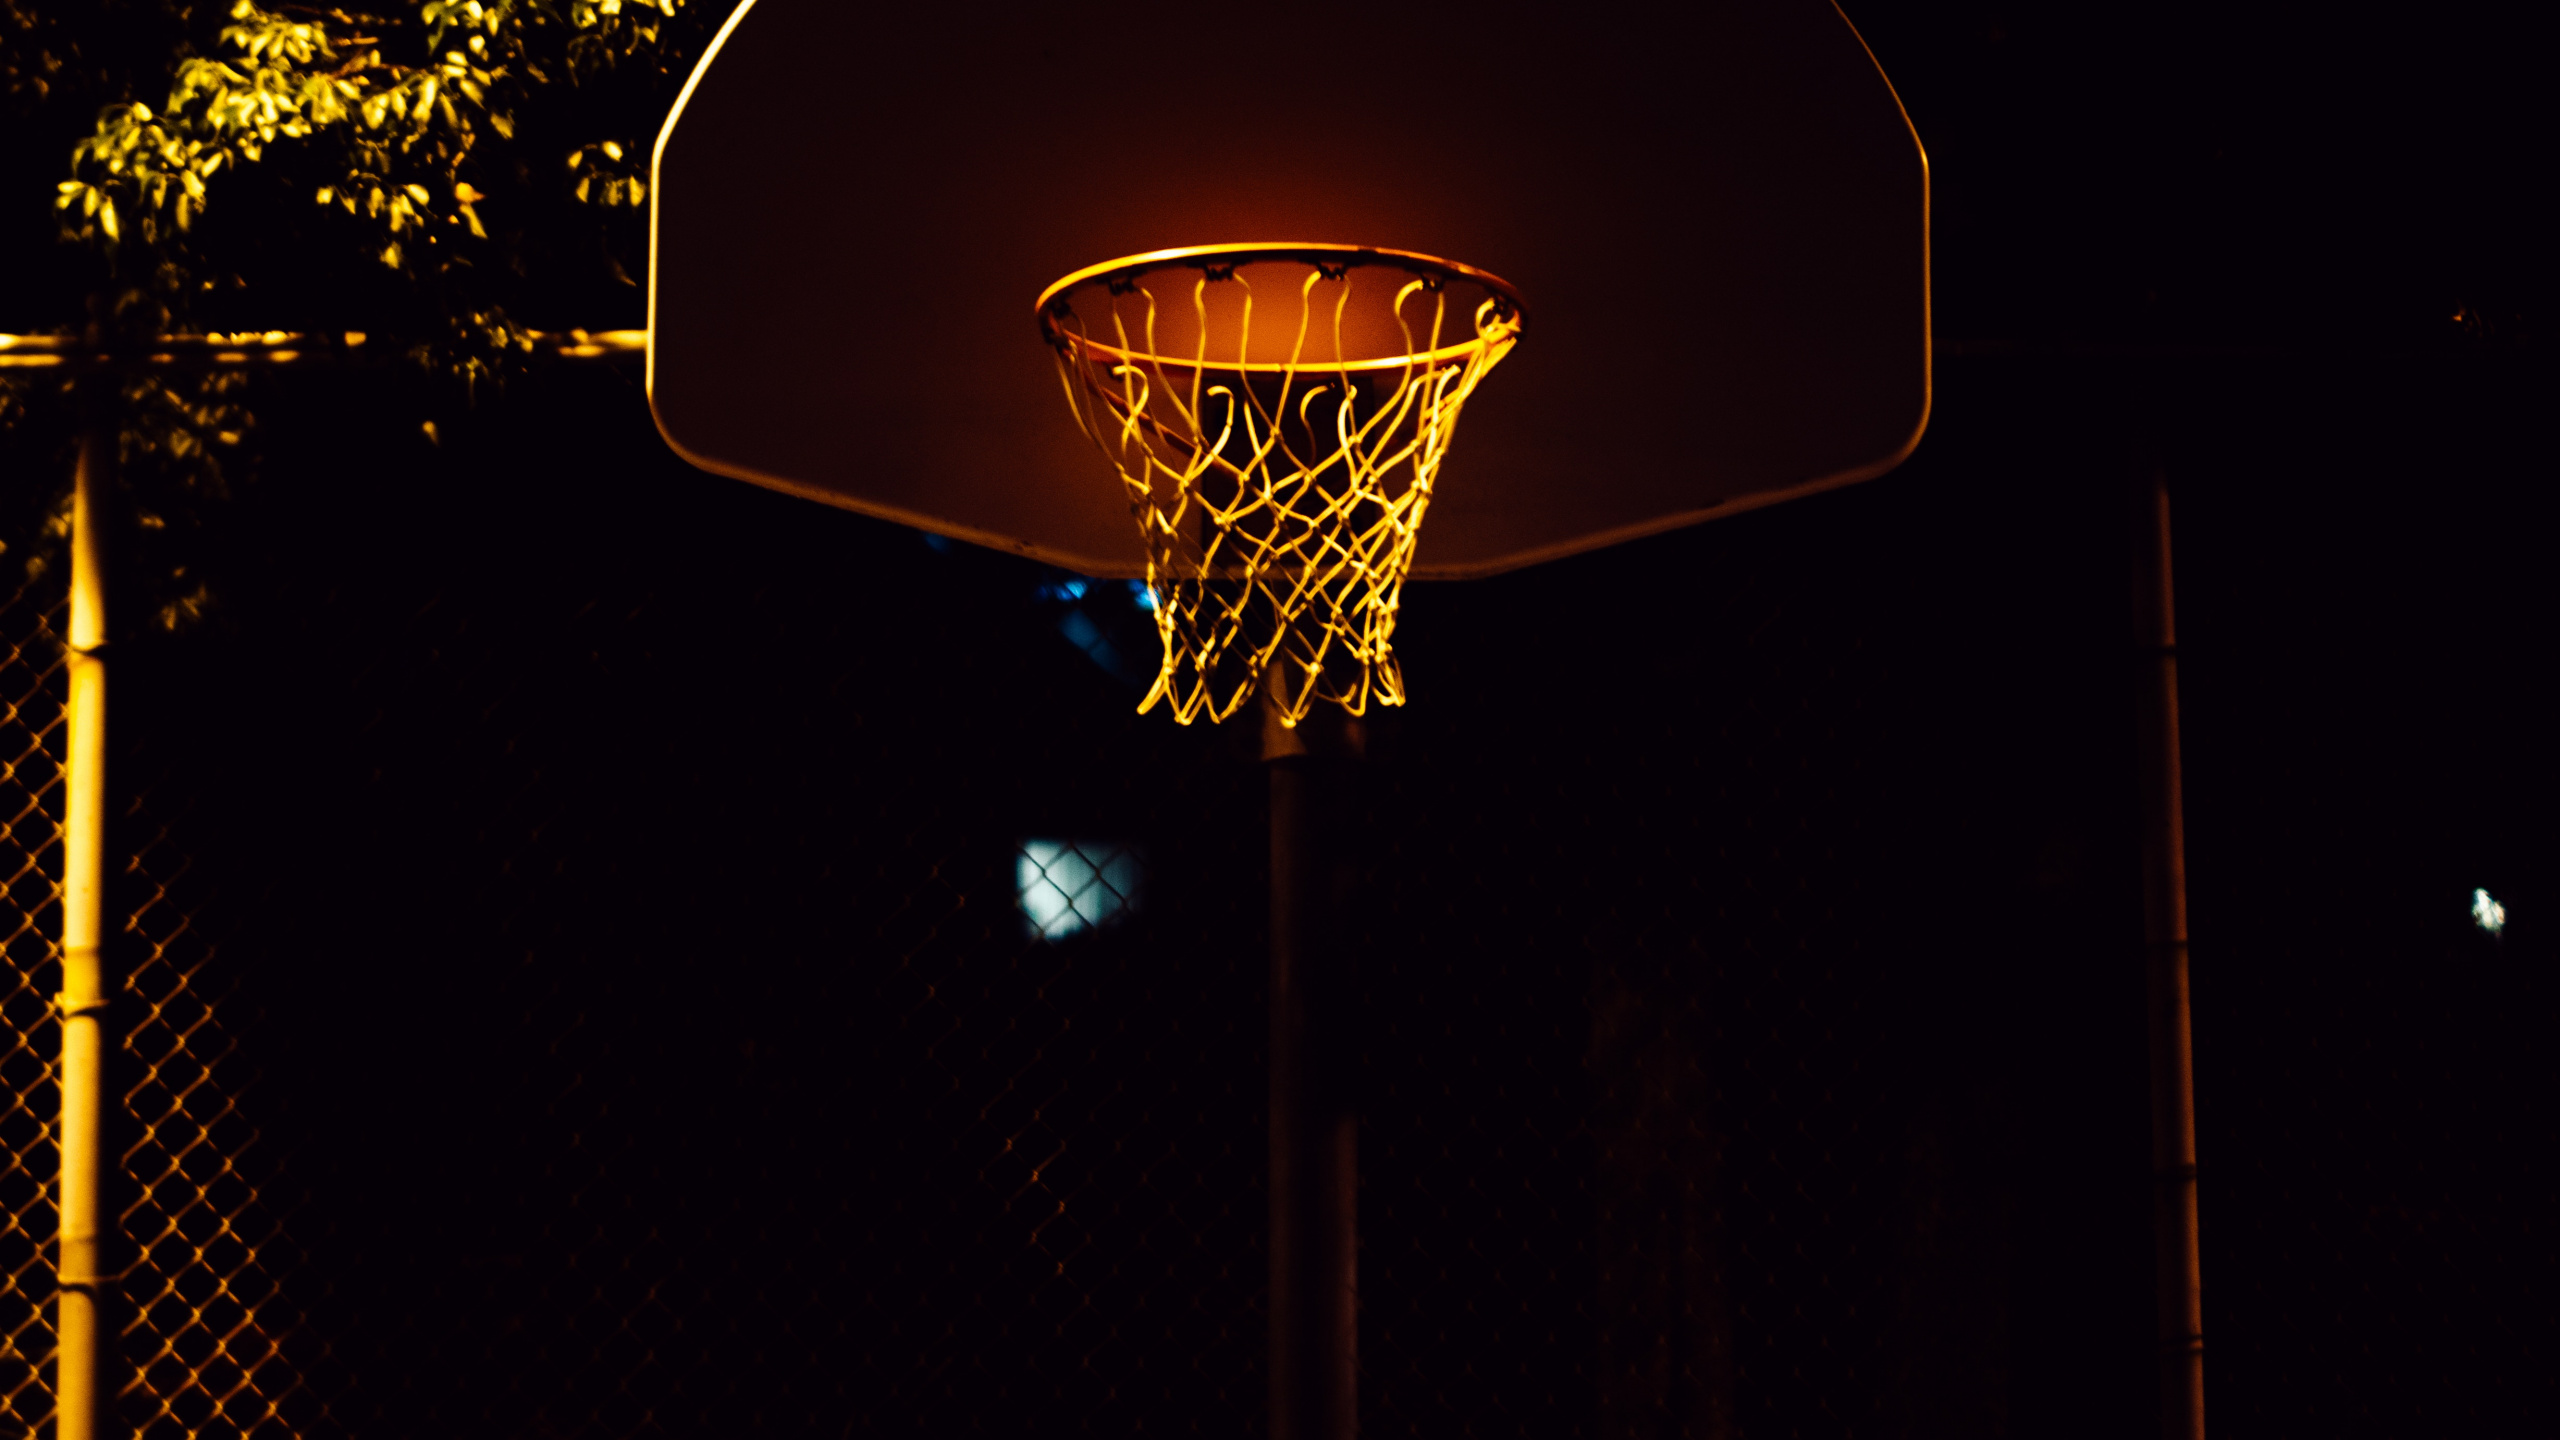 Canasta de Baloncesto Con Luz Encendida Durante la Noche.. Wallpaper in 2560x1440 Resolution